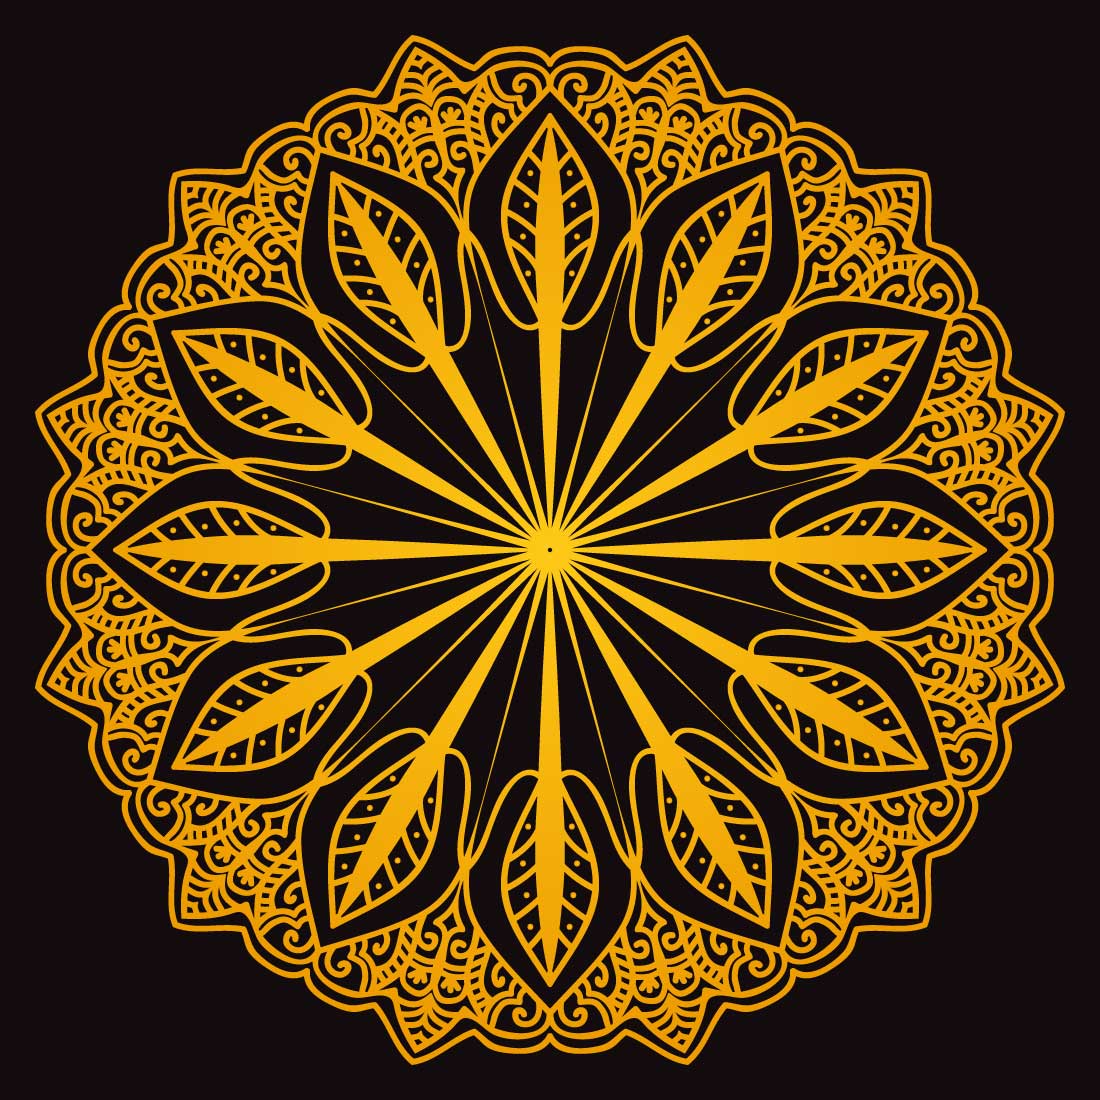 Simple Mandala Design cover image.